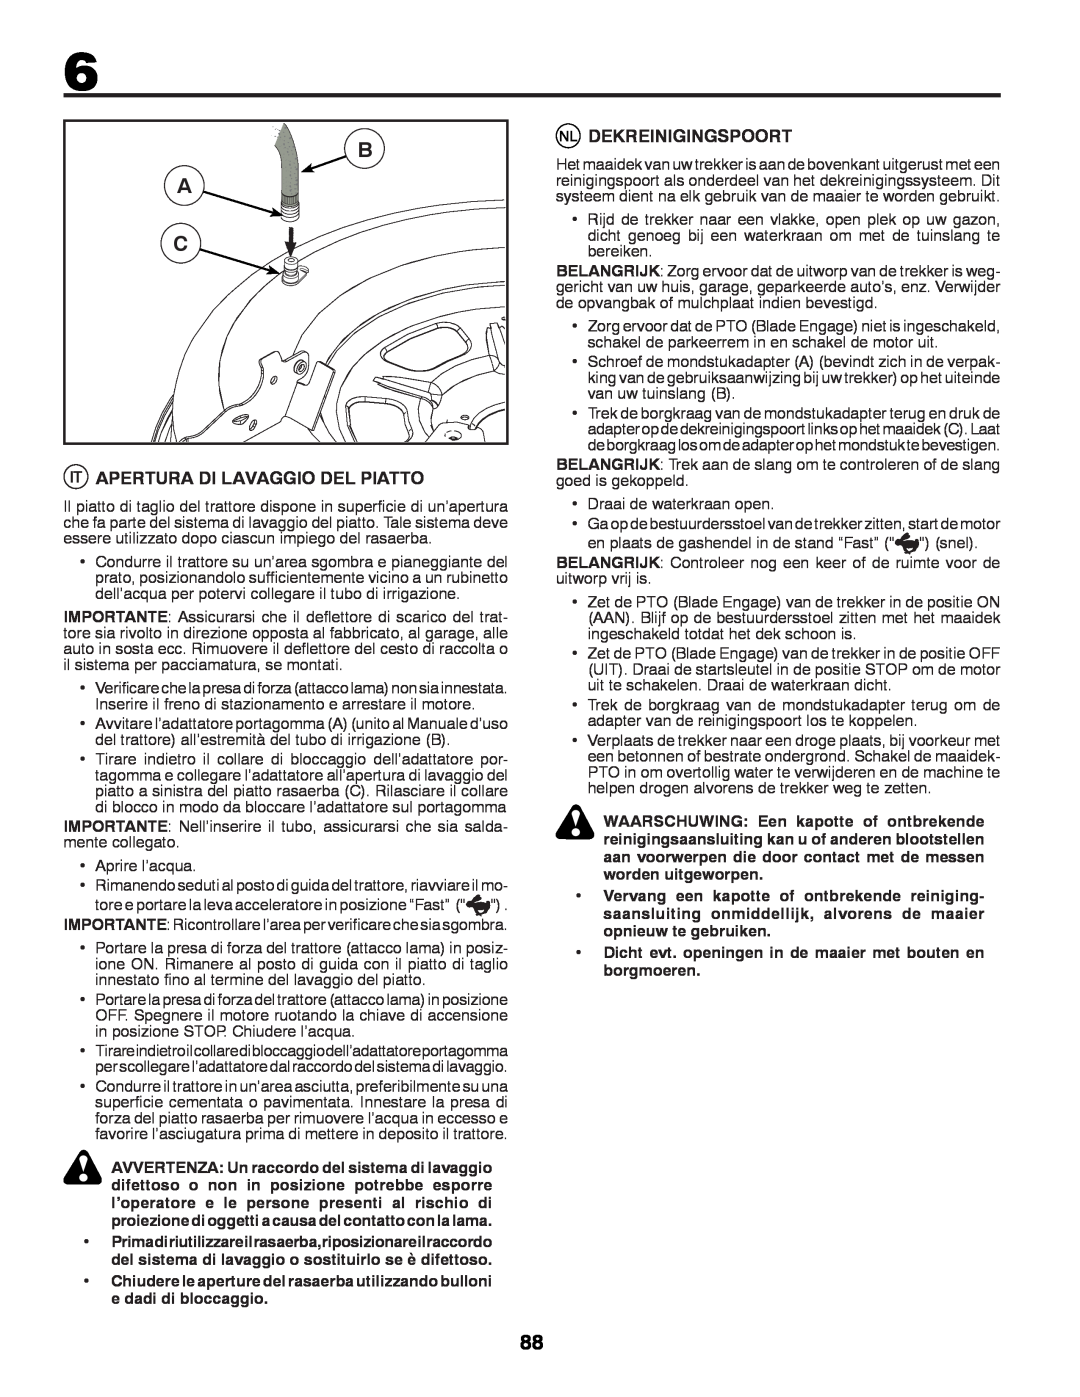 McCulloch M11577RB, 96041012300 instruction manual Dekreinigingspoort, Apertura Di Lavaggio Del Piatto 